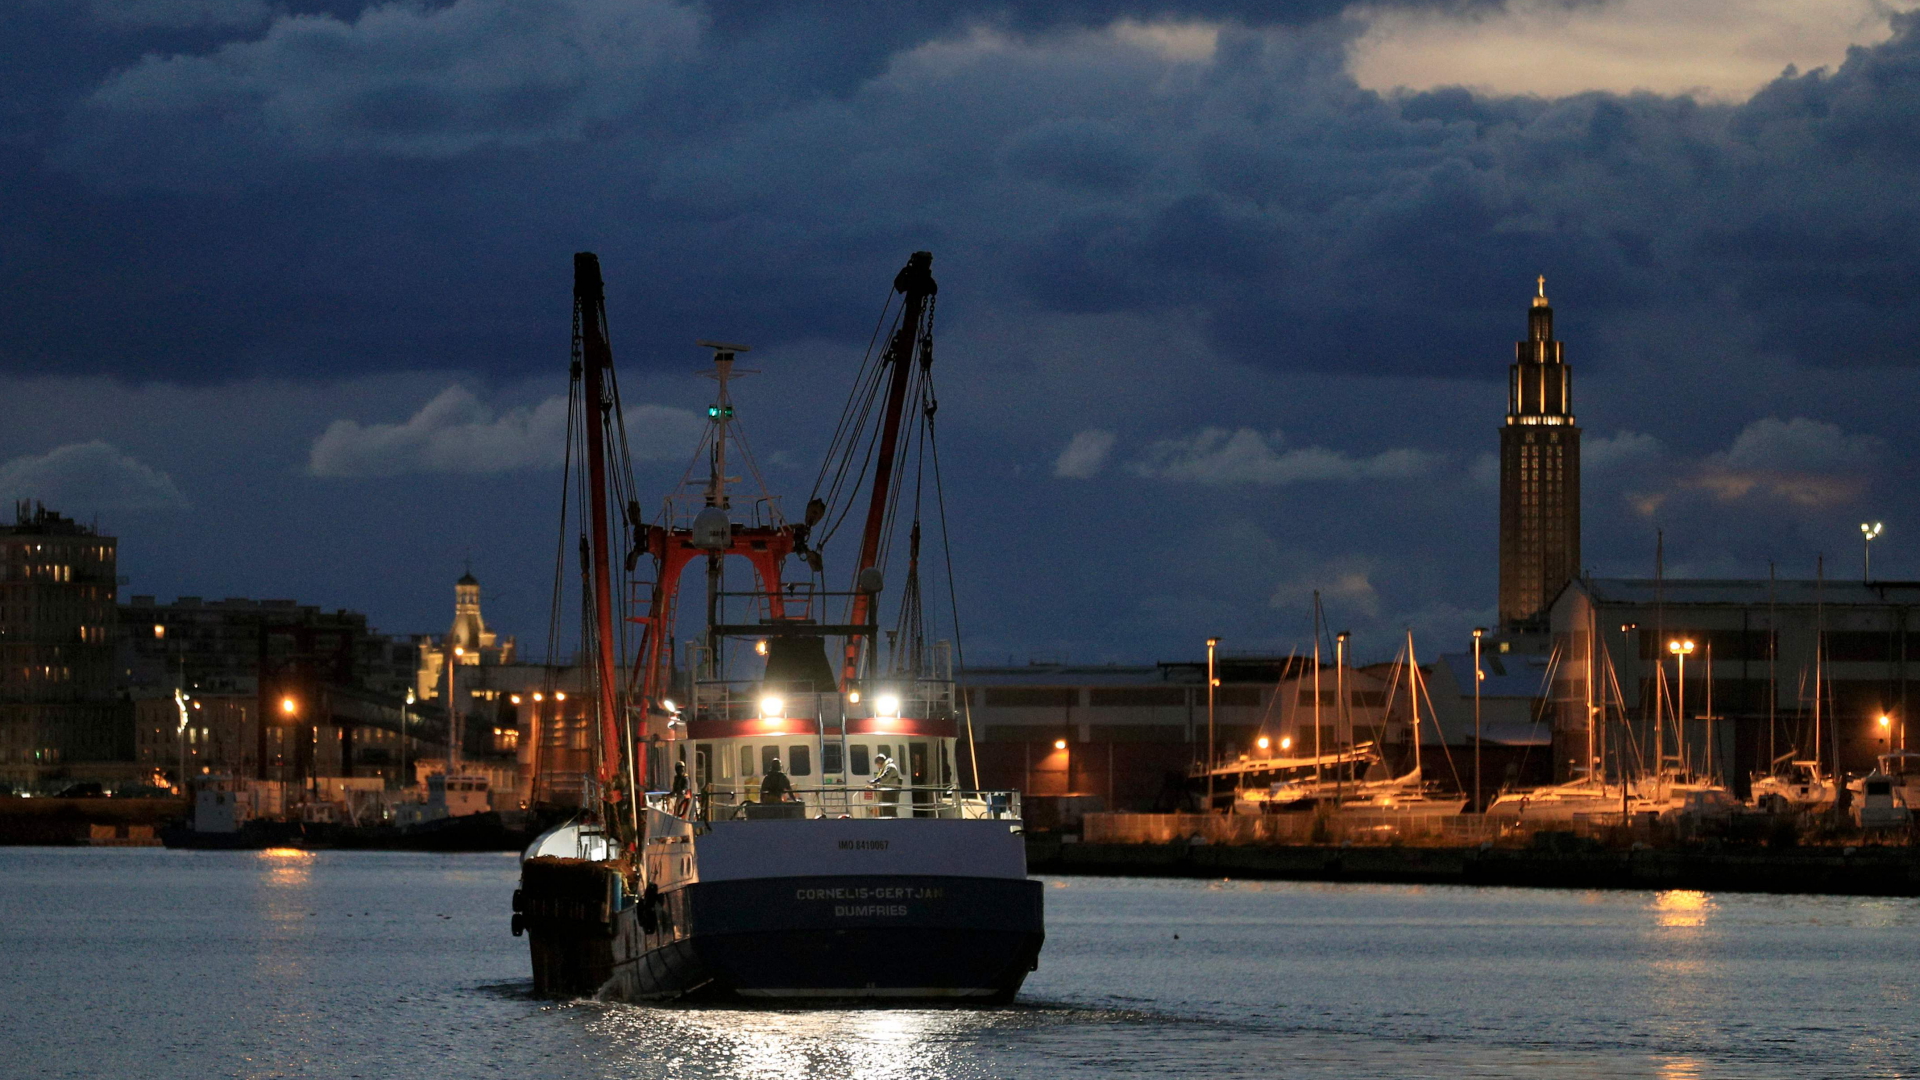 Der zuvor festgesetzte britische Fischtrawler "Cornelis Gert Jan" verlässt den Hafen von Le Havre (Frankreich) | AFP